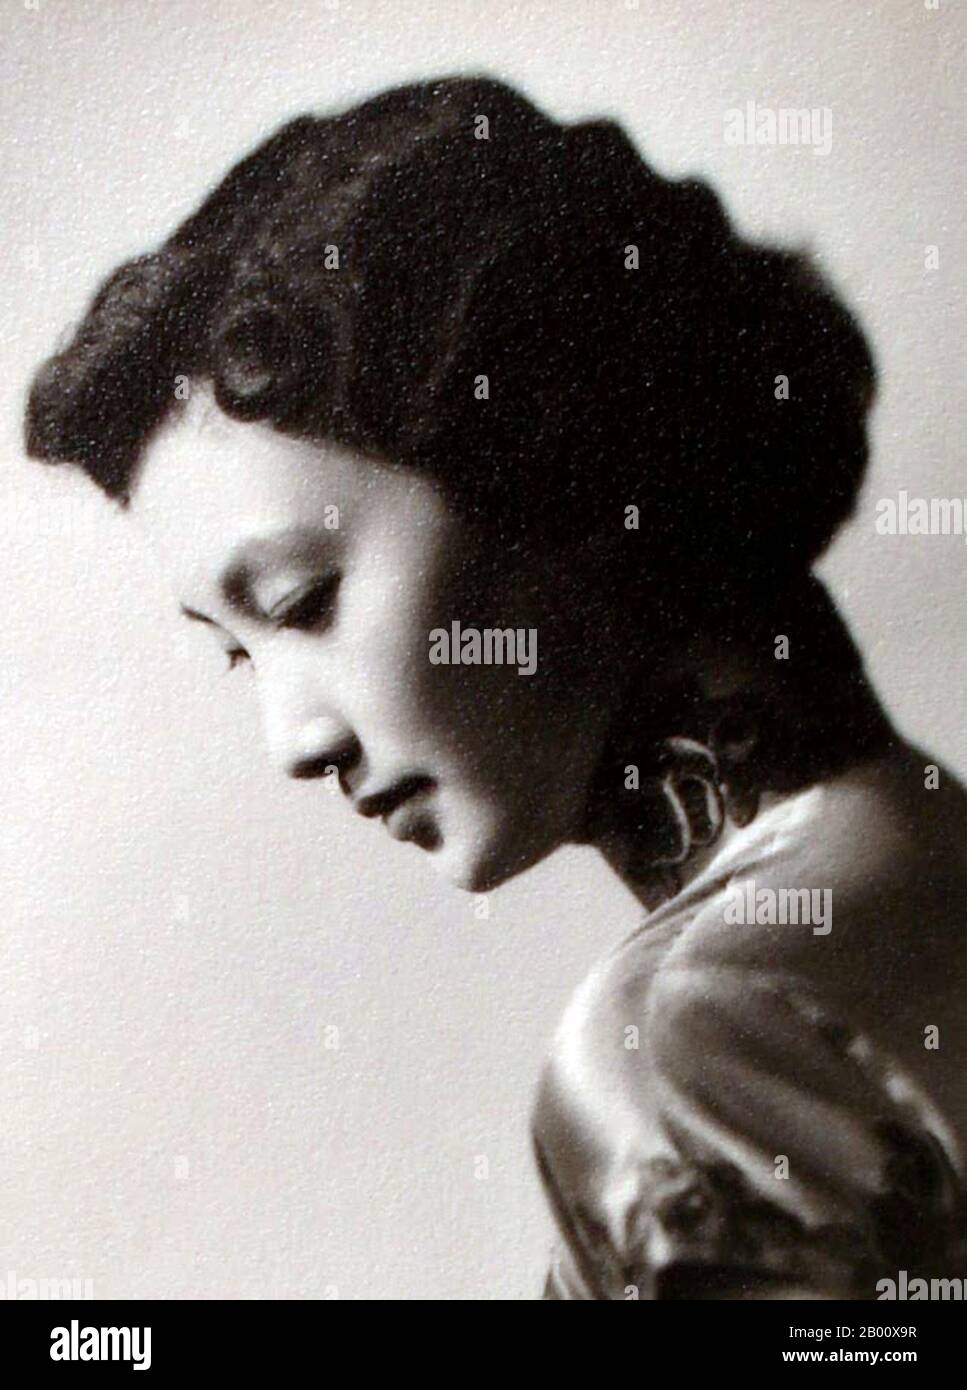 Chine: Xia Meng/HSIA Moon, 'Great Wall Crown Princess' de l'industrie cinématographique de Hong Kong, dans les années 1950. Xia Meng, alias HSIA Moon ou Miranda Yang; né Yang Meng, le 16 février 1932 à Shanghai, Chine) est une actrice et producteur de Hong Kong. Elle était la figure clé de la scène de cinéma Mandarin de l'aile gauche de Hong Kong. Banque D'Images